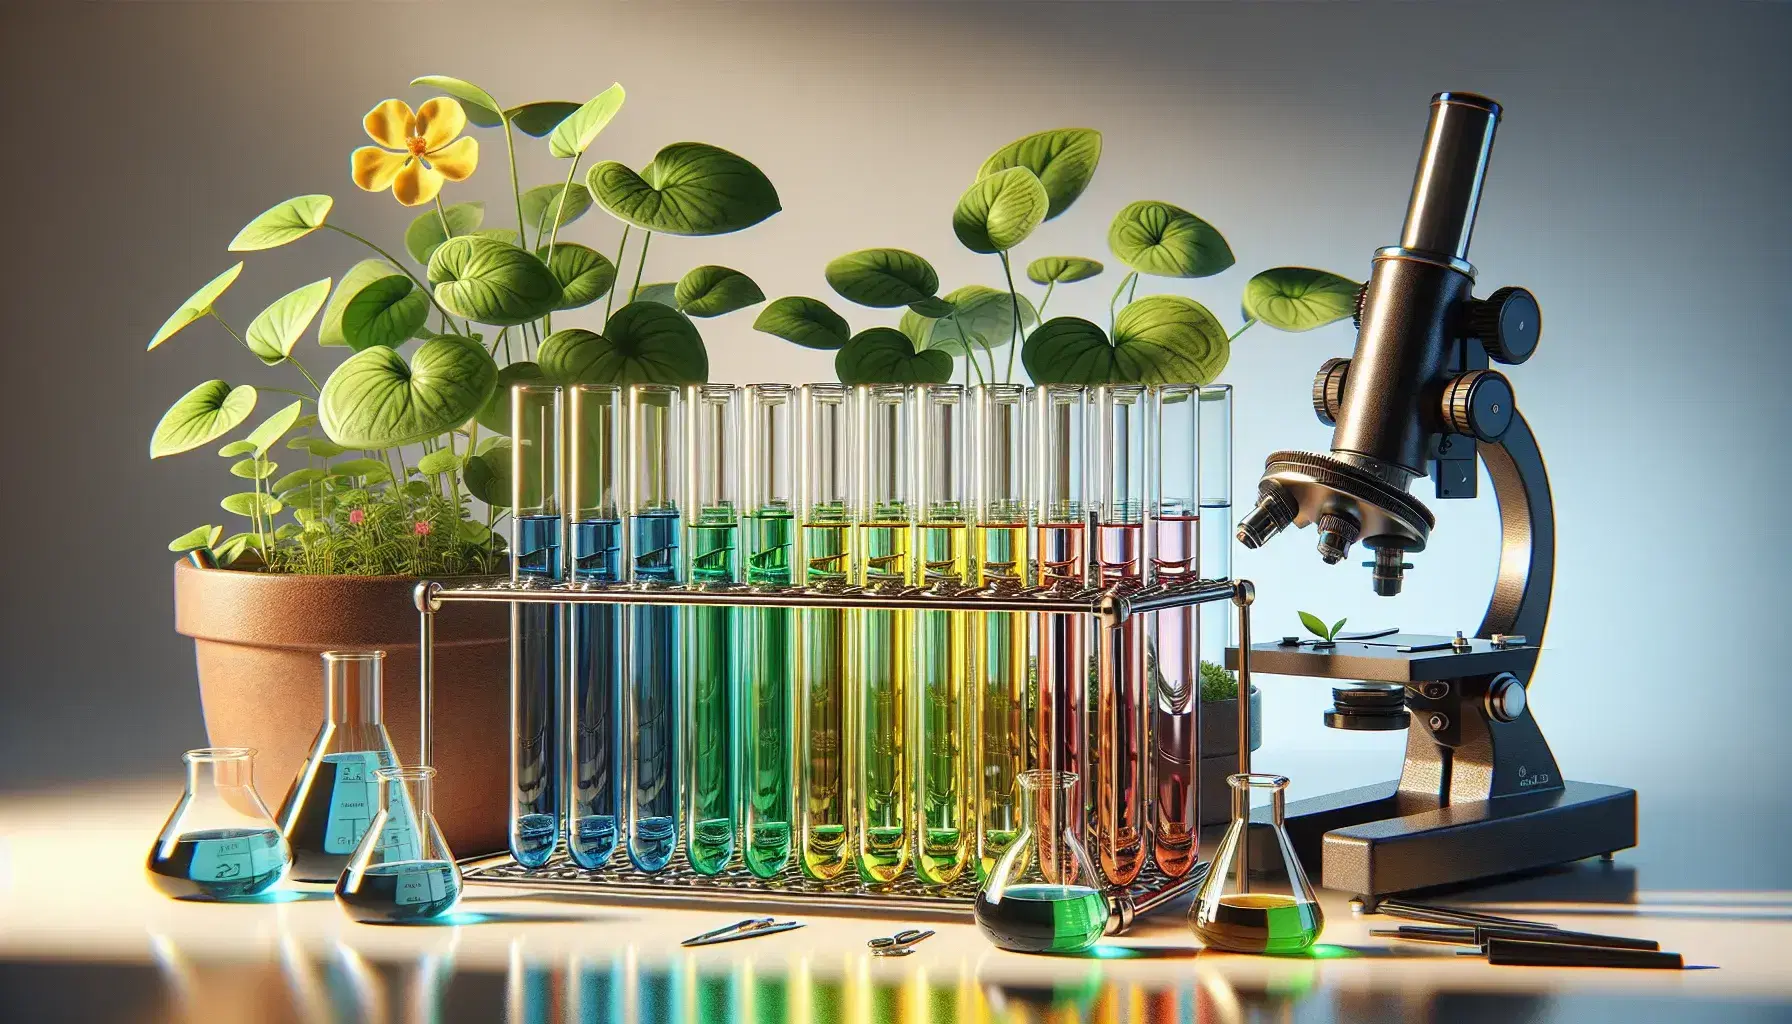 Tubos de ensayo con líquidos de colores azul, verde, amarillo y rojo en un soporte metálico, junto a una planta y un microscopio de laboratorio.